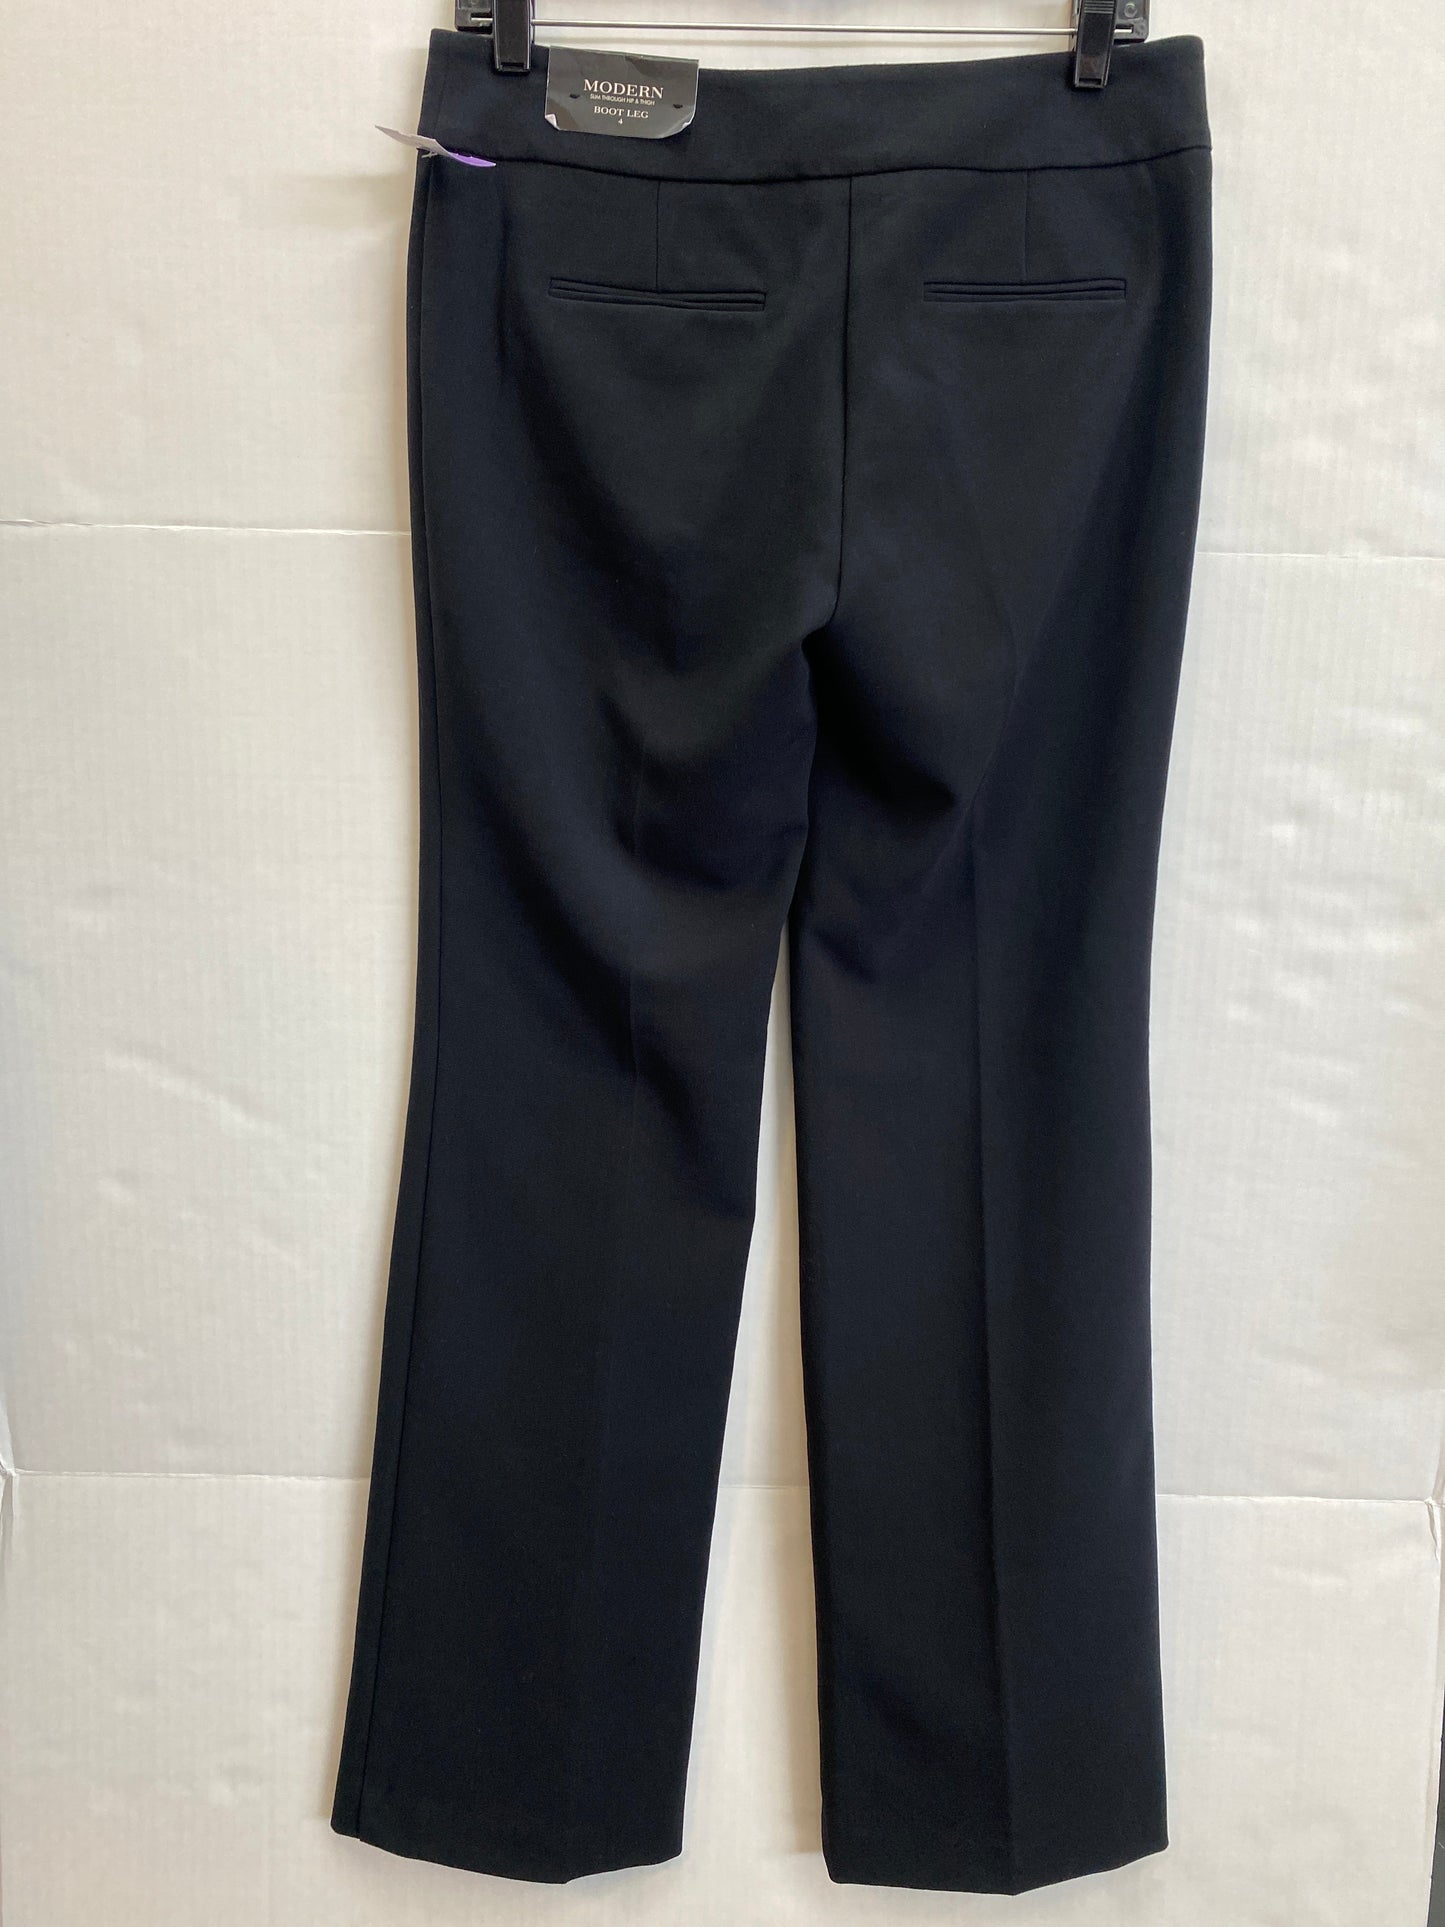 Black Pants Dress Ann Taylor, Size 4